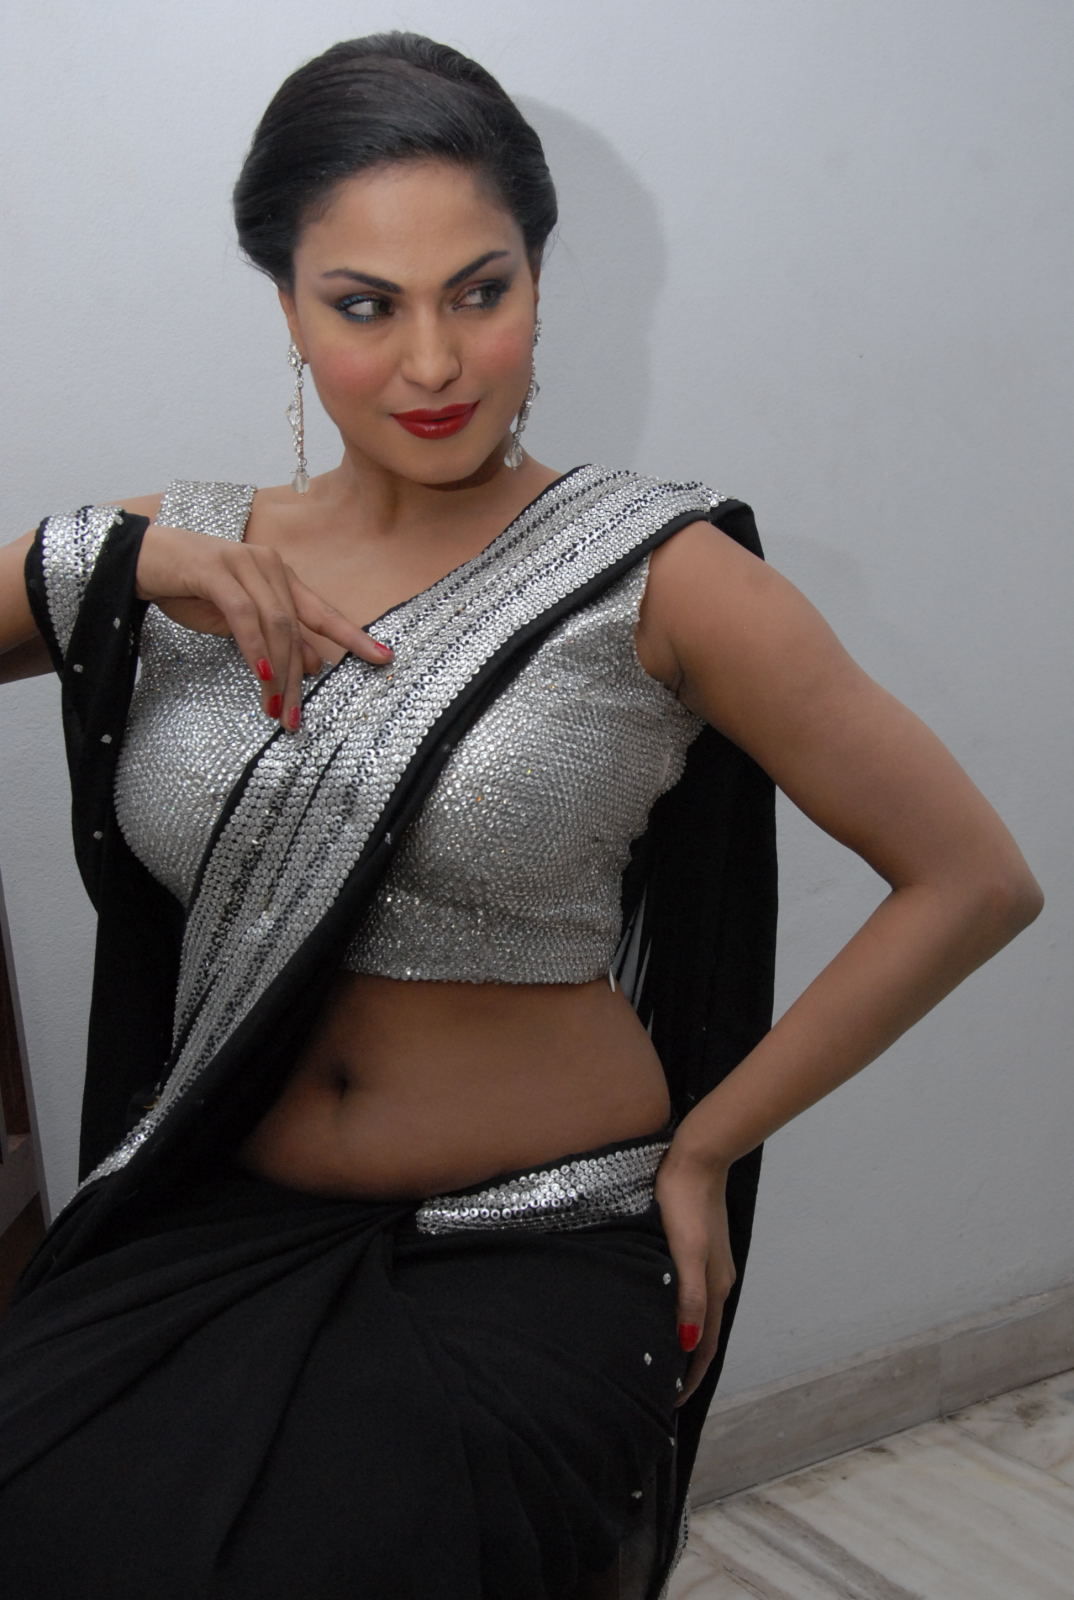 My Country Actress Veena Malik Hot At Made In Vizag Audio